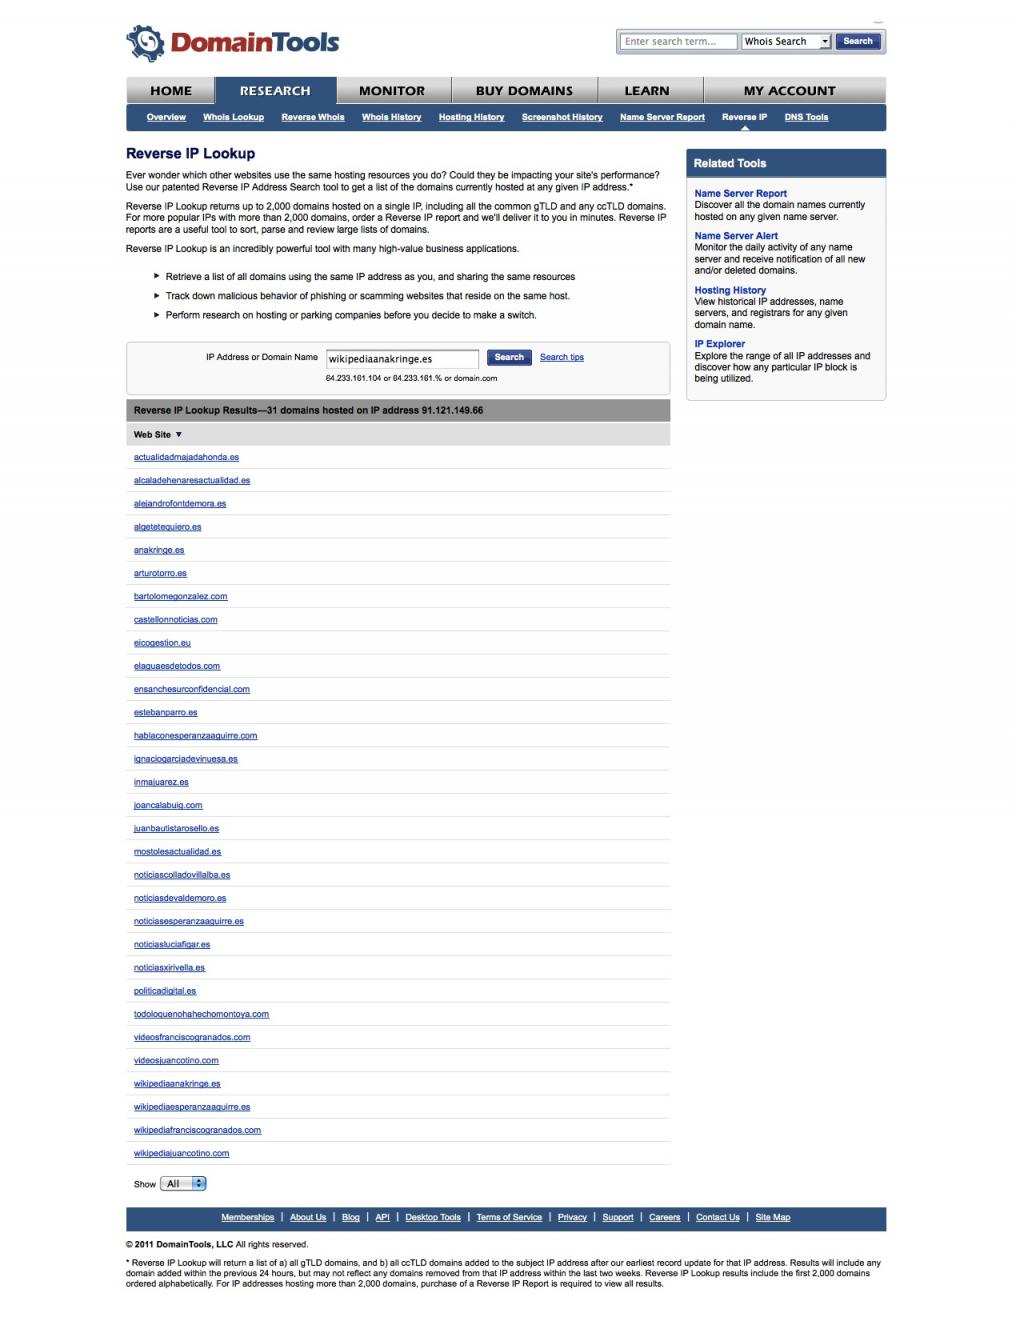 Lista de páginas gestionadas por De Pedro en 2011. 